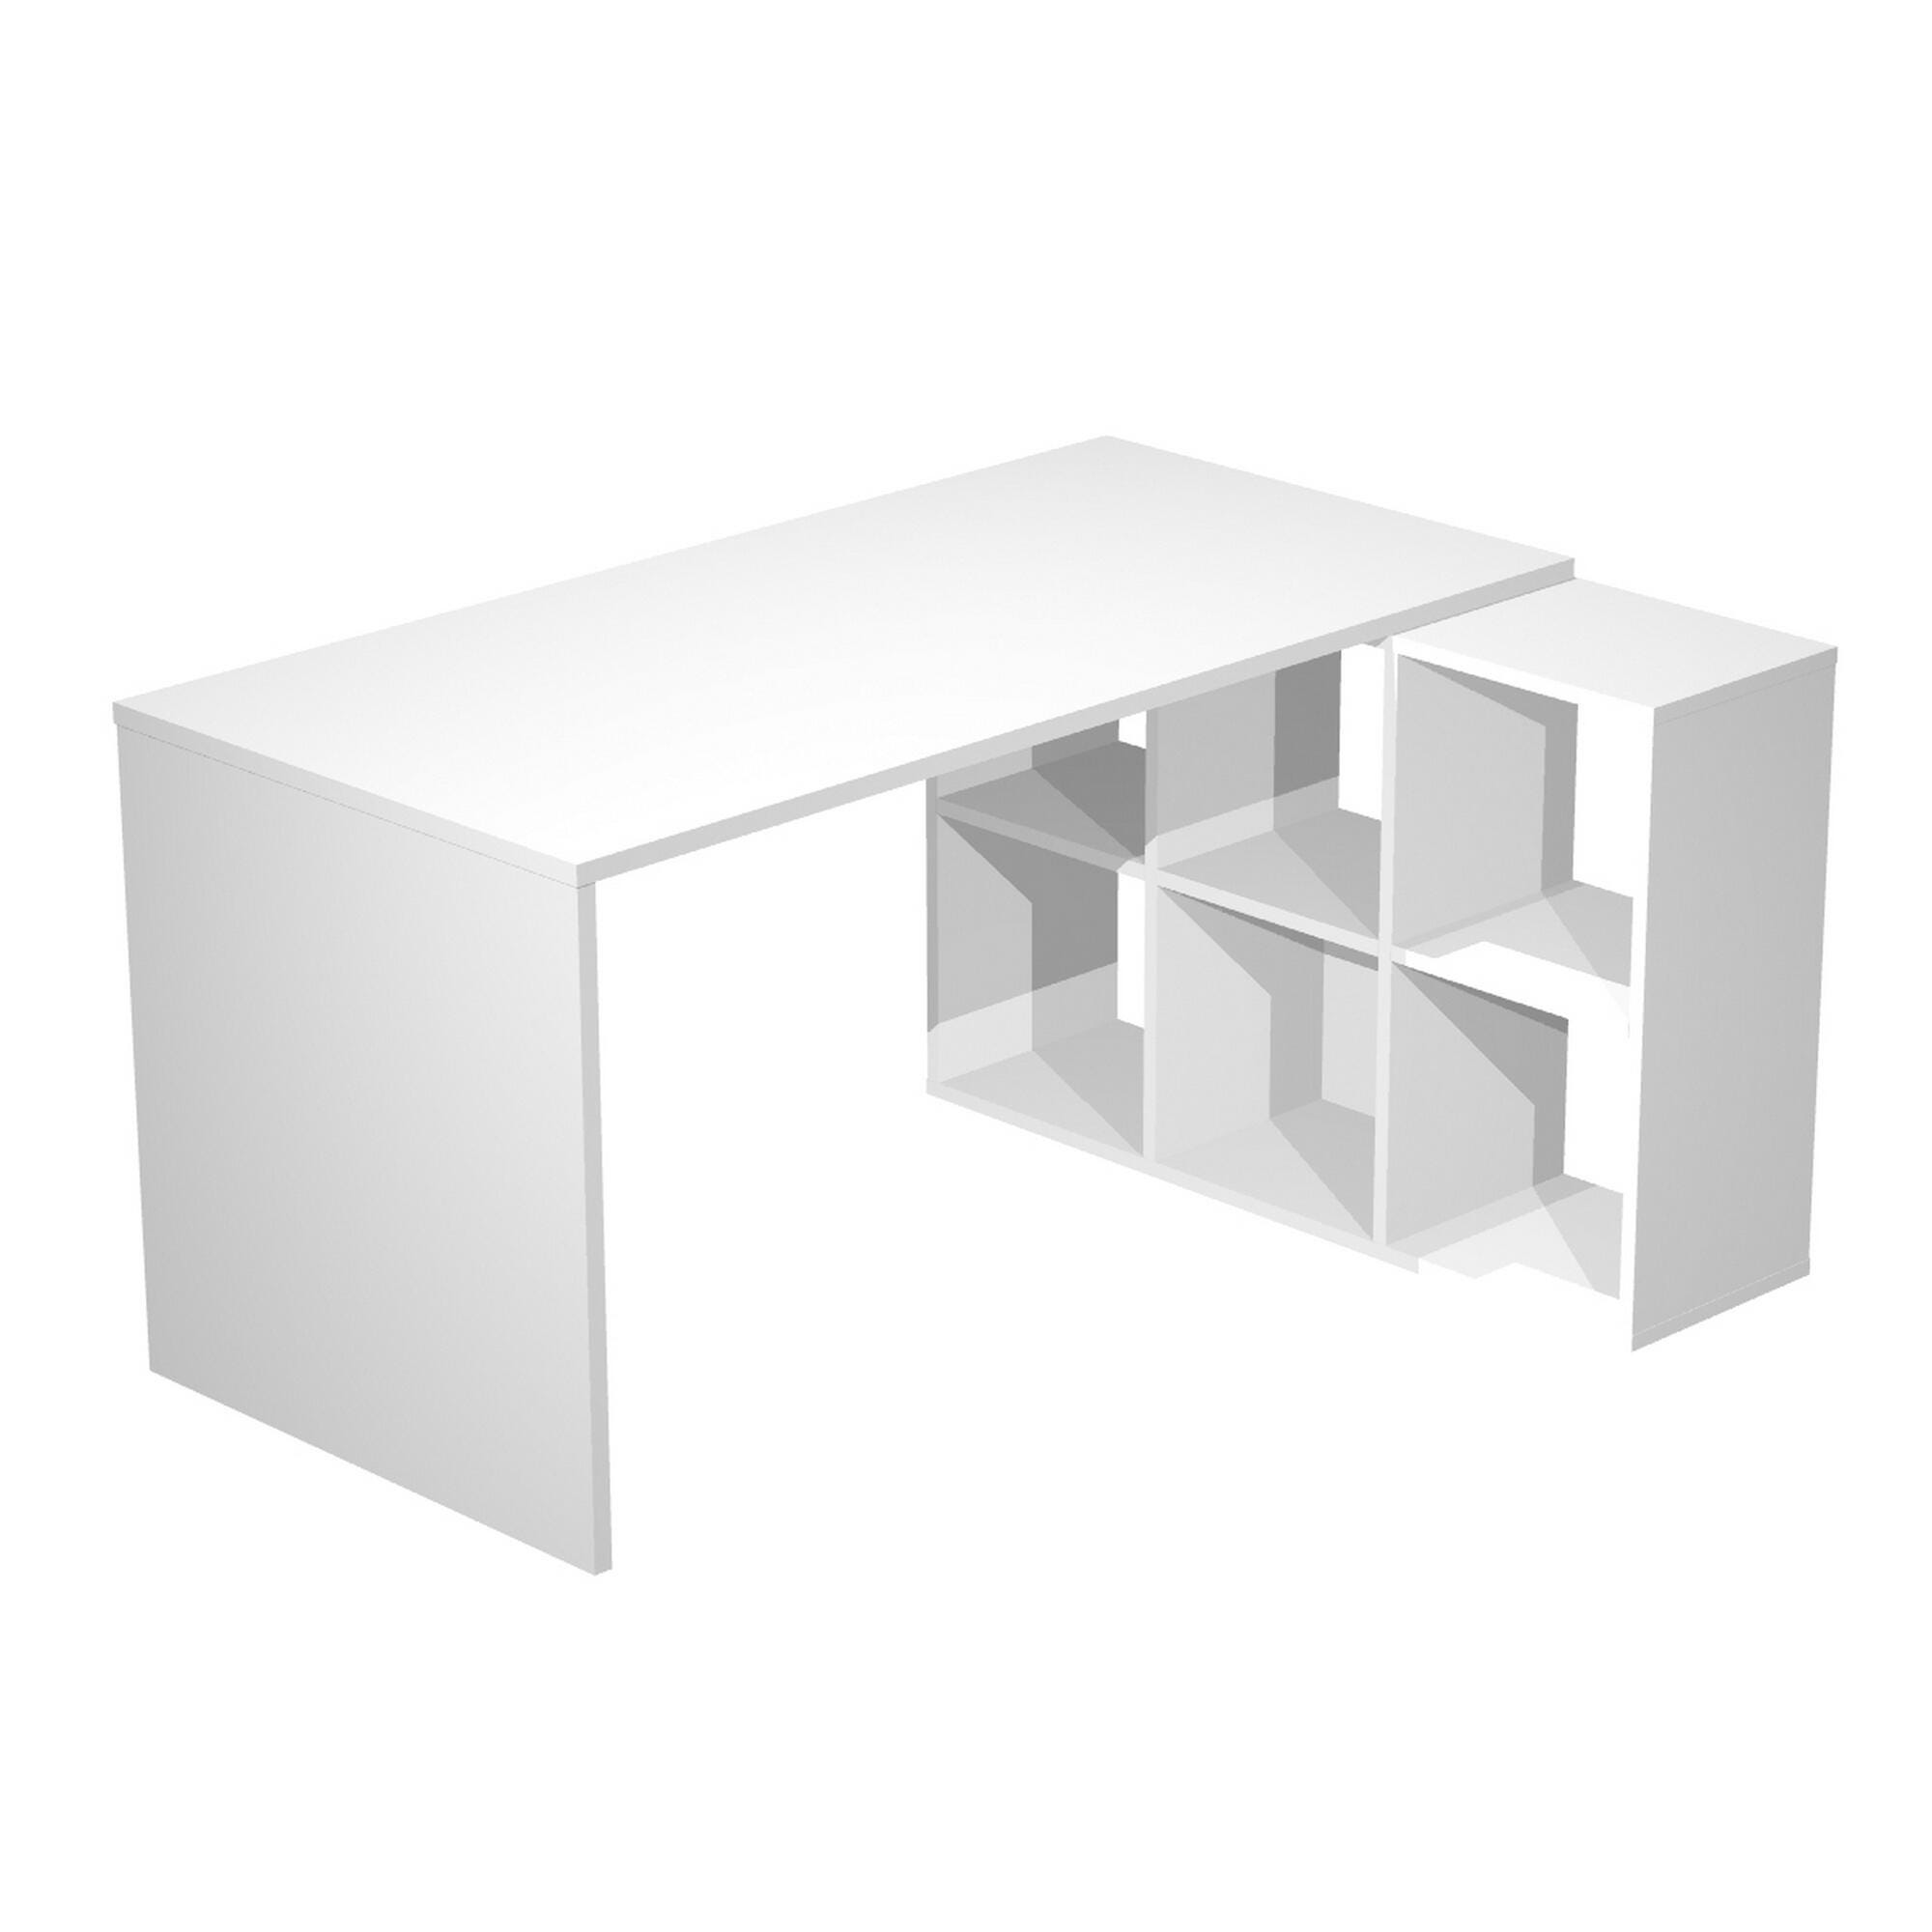 Mesa escritorio de 140 x 60 blanca